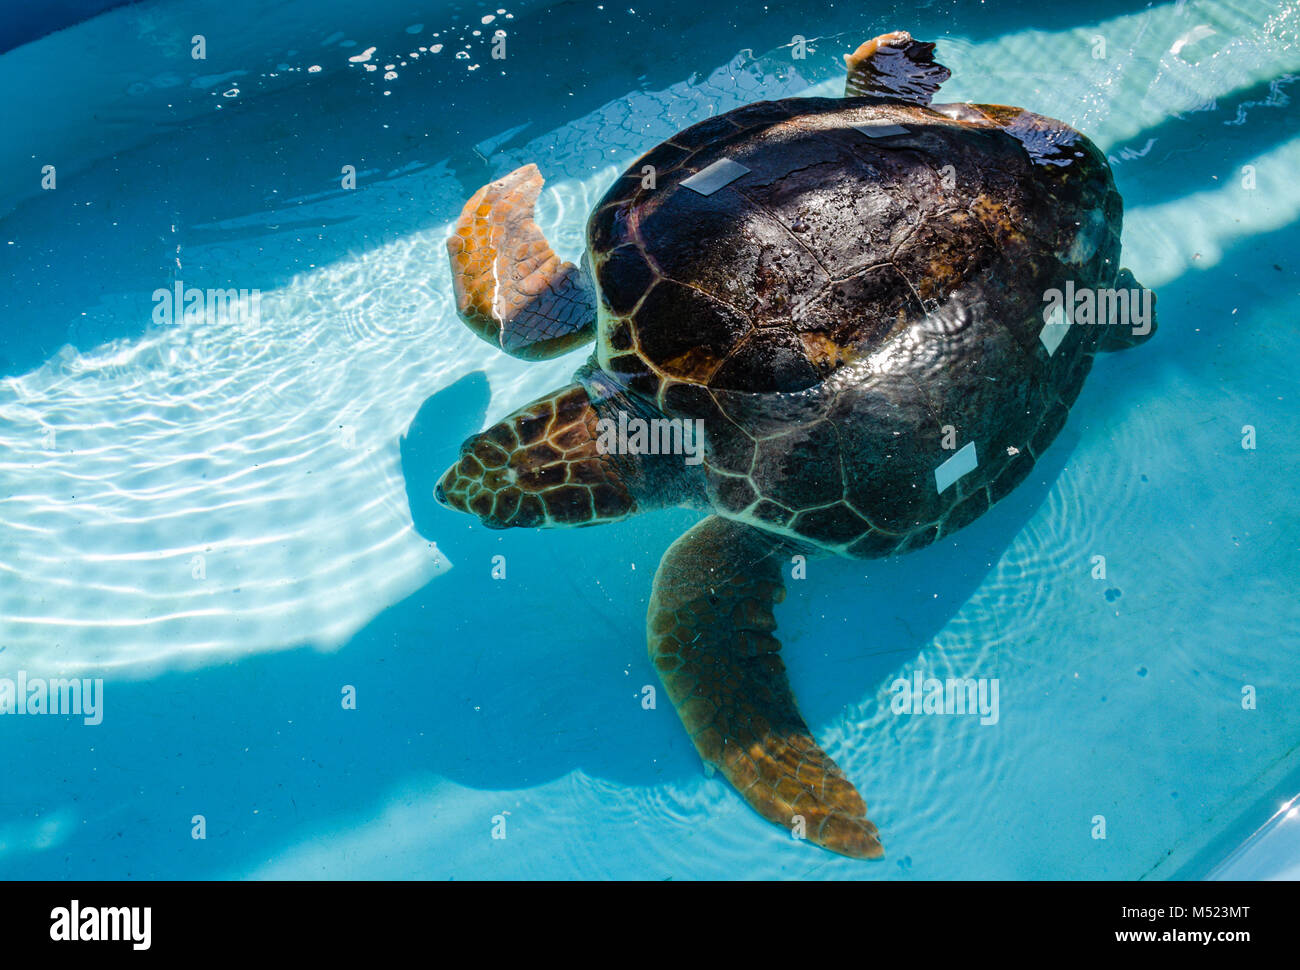 Rehabilitierung der Unechten Karettschildkröte auf der Turtle Hospital, eine kleine gemeinnützige Organisation, die sich für die Rehabilitation der bedrohten Meeresschildkröten widmet. Stockfoto